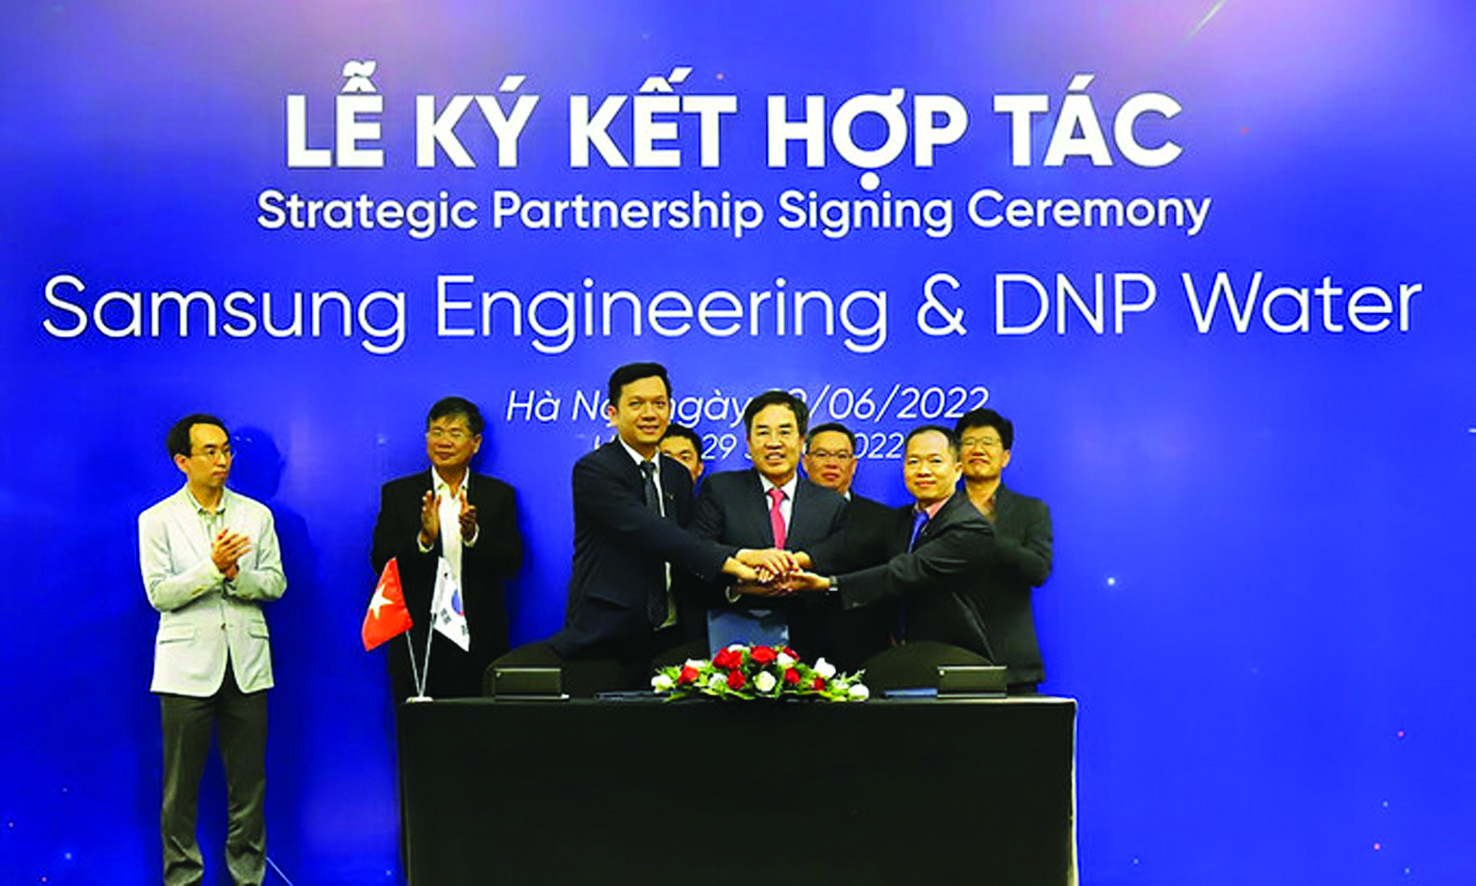  Samsung Engineering vừa mua 24% cổ phần của DNP Water để thâm nhập sâu vào ngành nước Việt Nam.